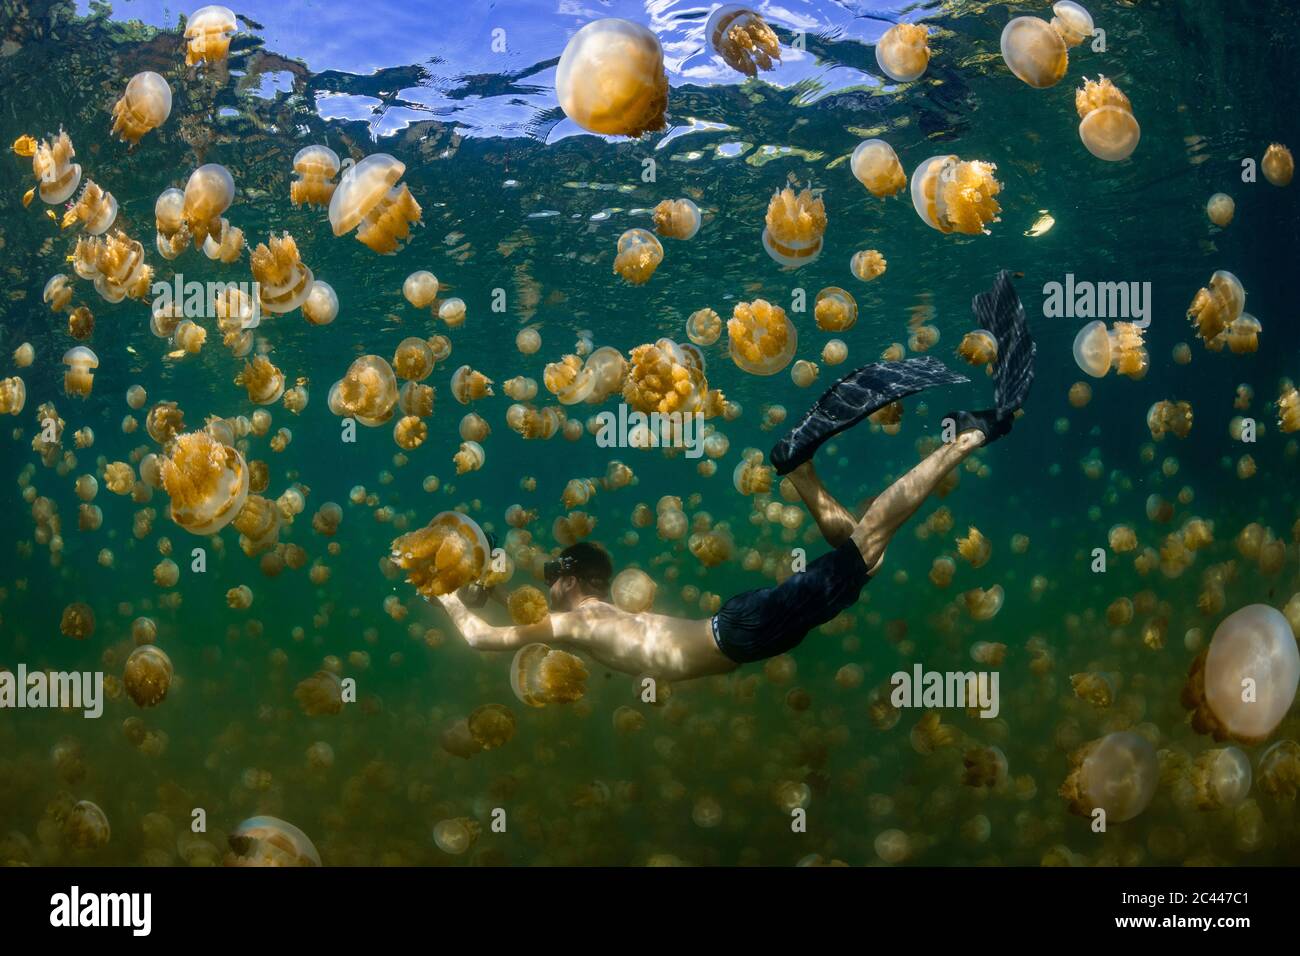 Palau, île d'Eil Malk, homme nageant avec des méduses dans le lac des méduses Banque D'Images